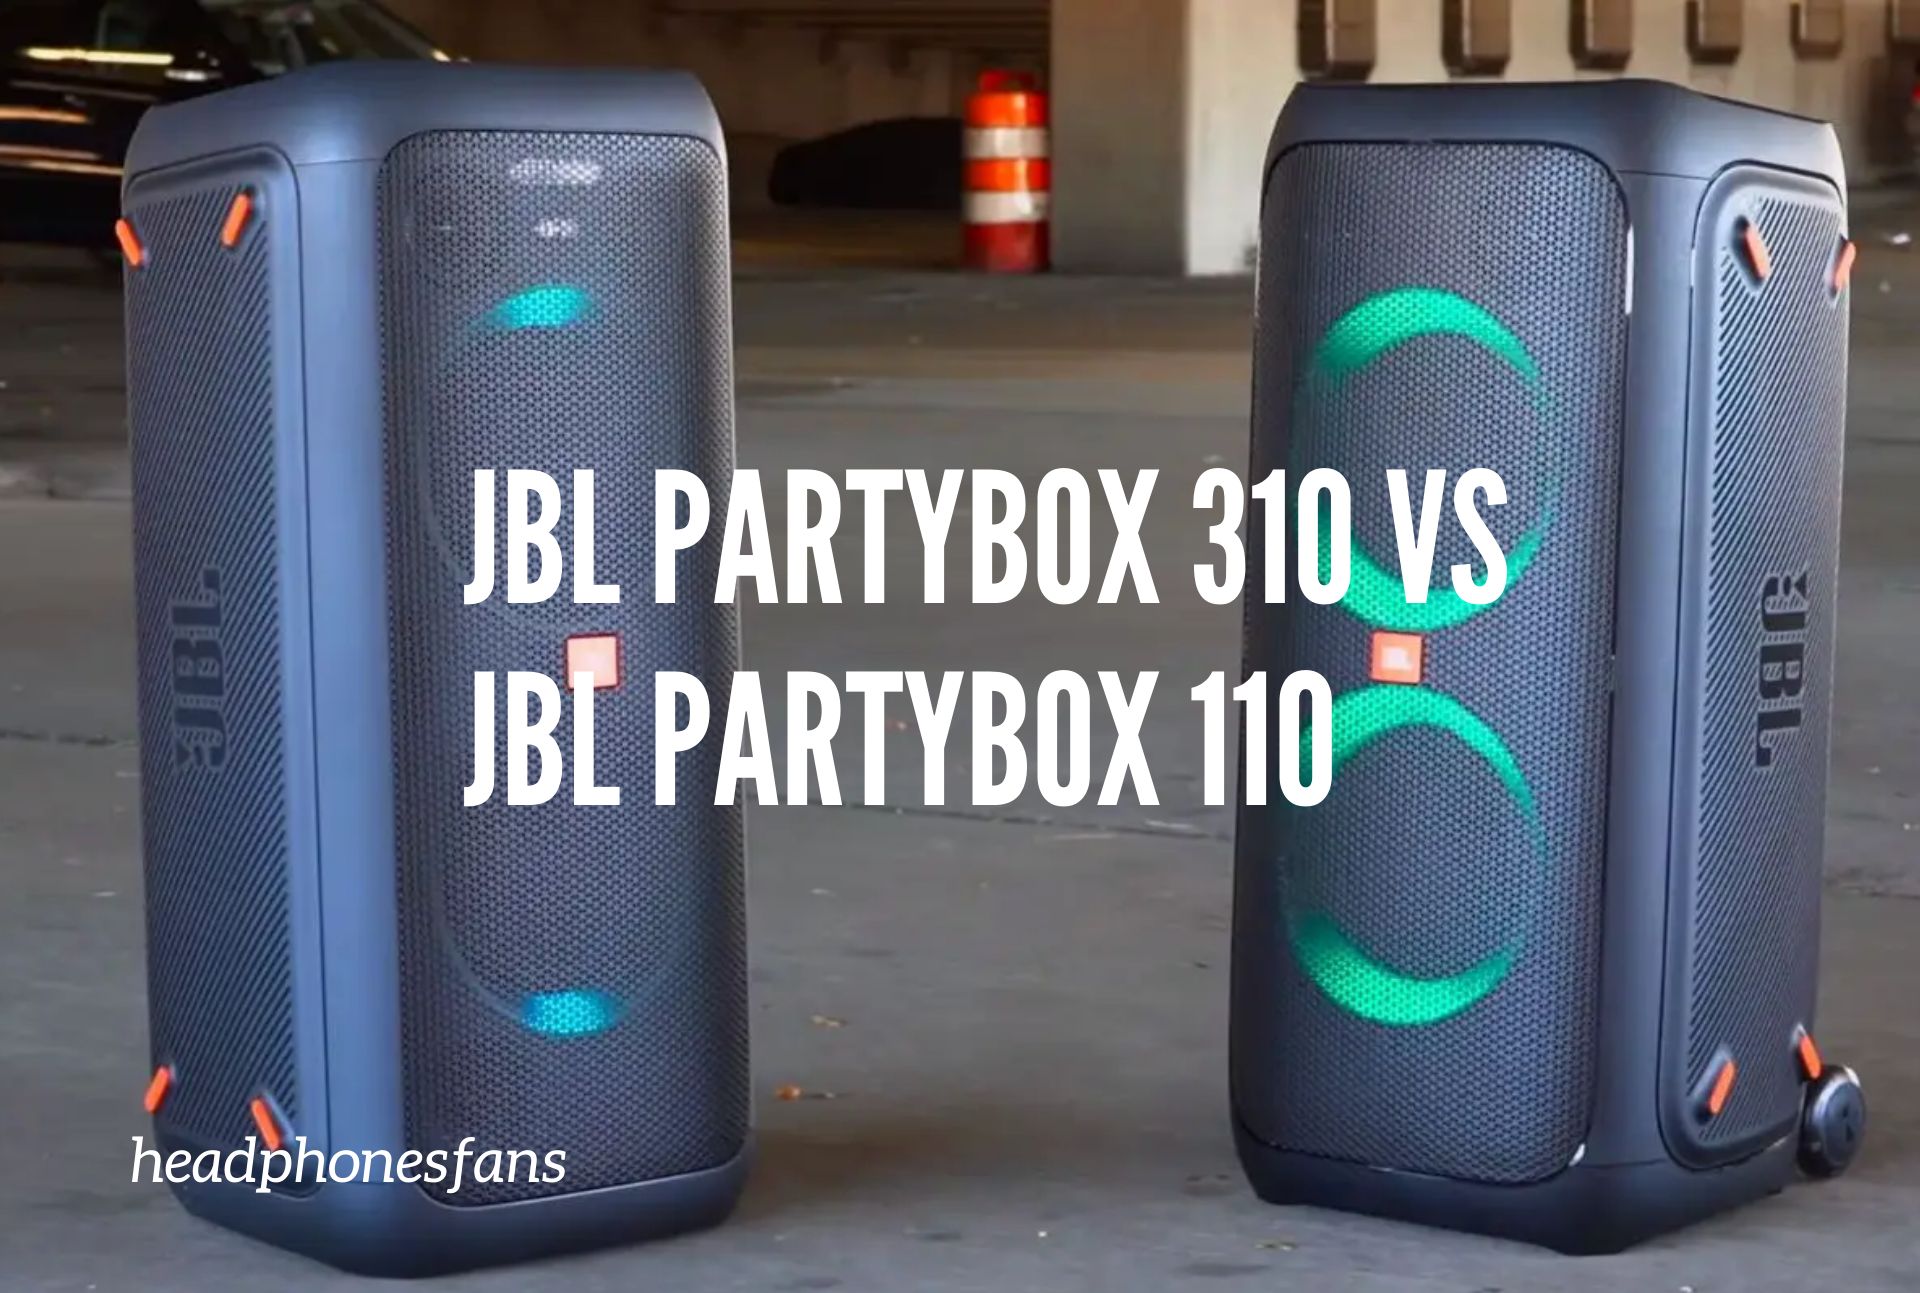 jbl partybox 310 vs jbl partybox 110